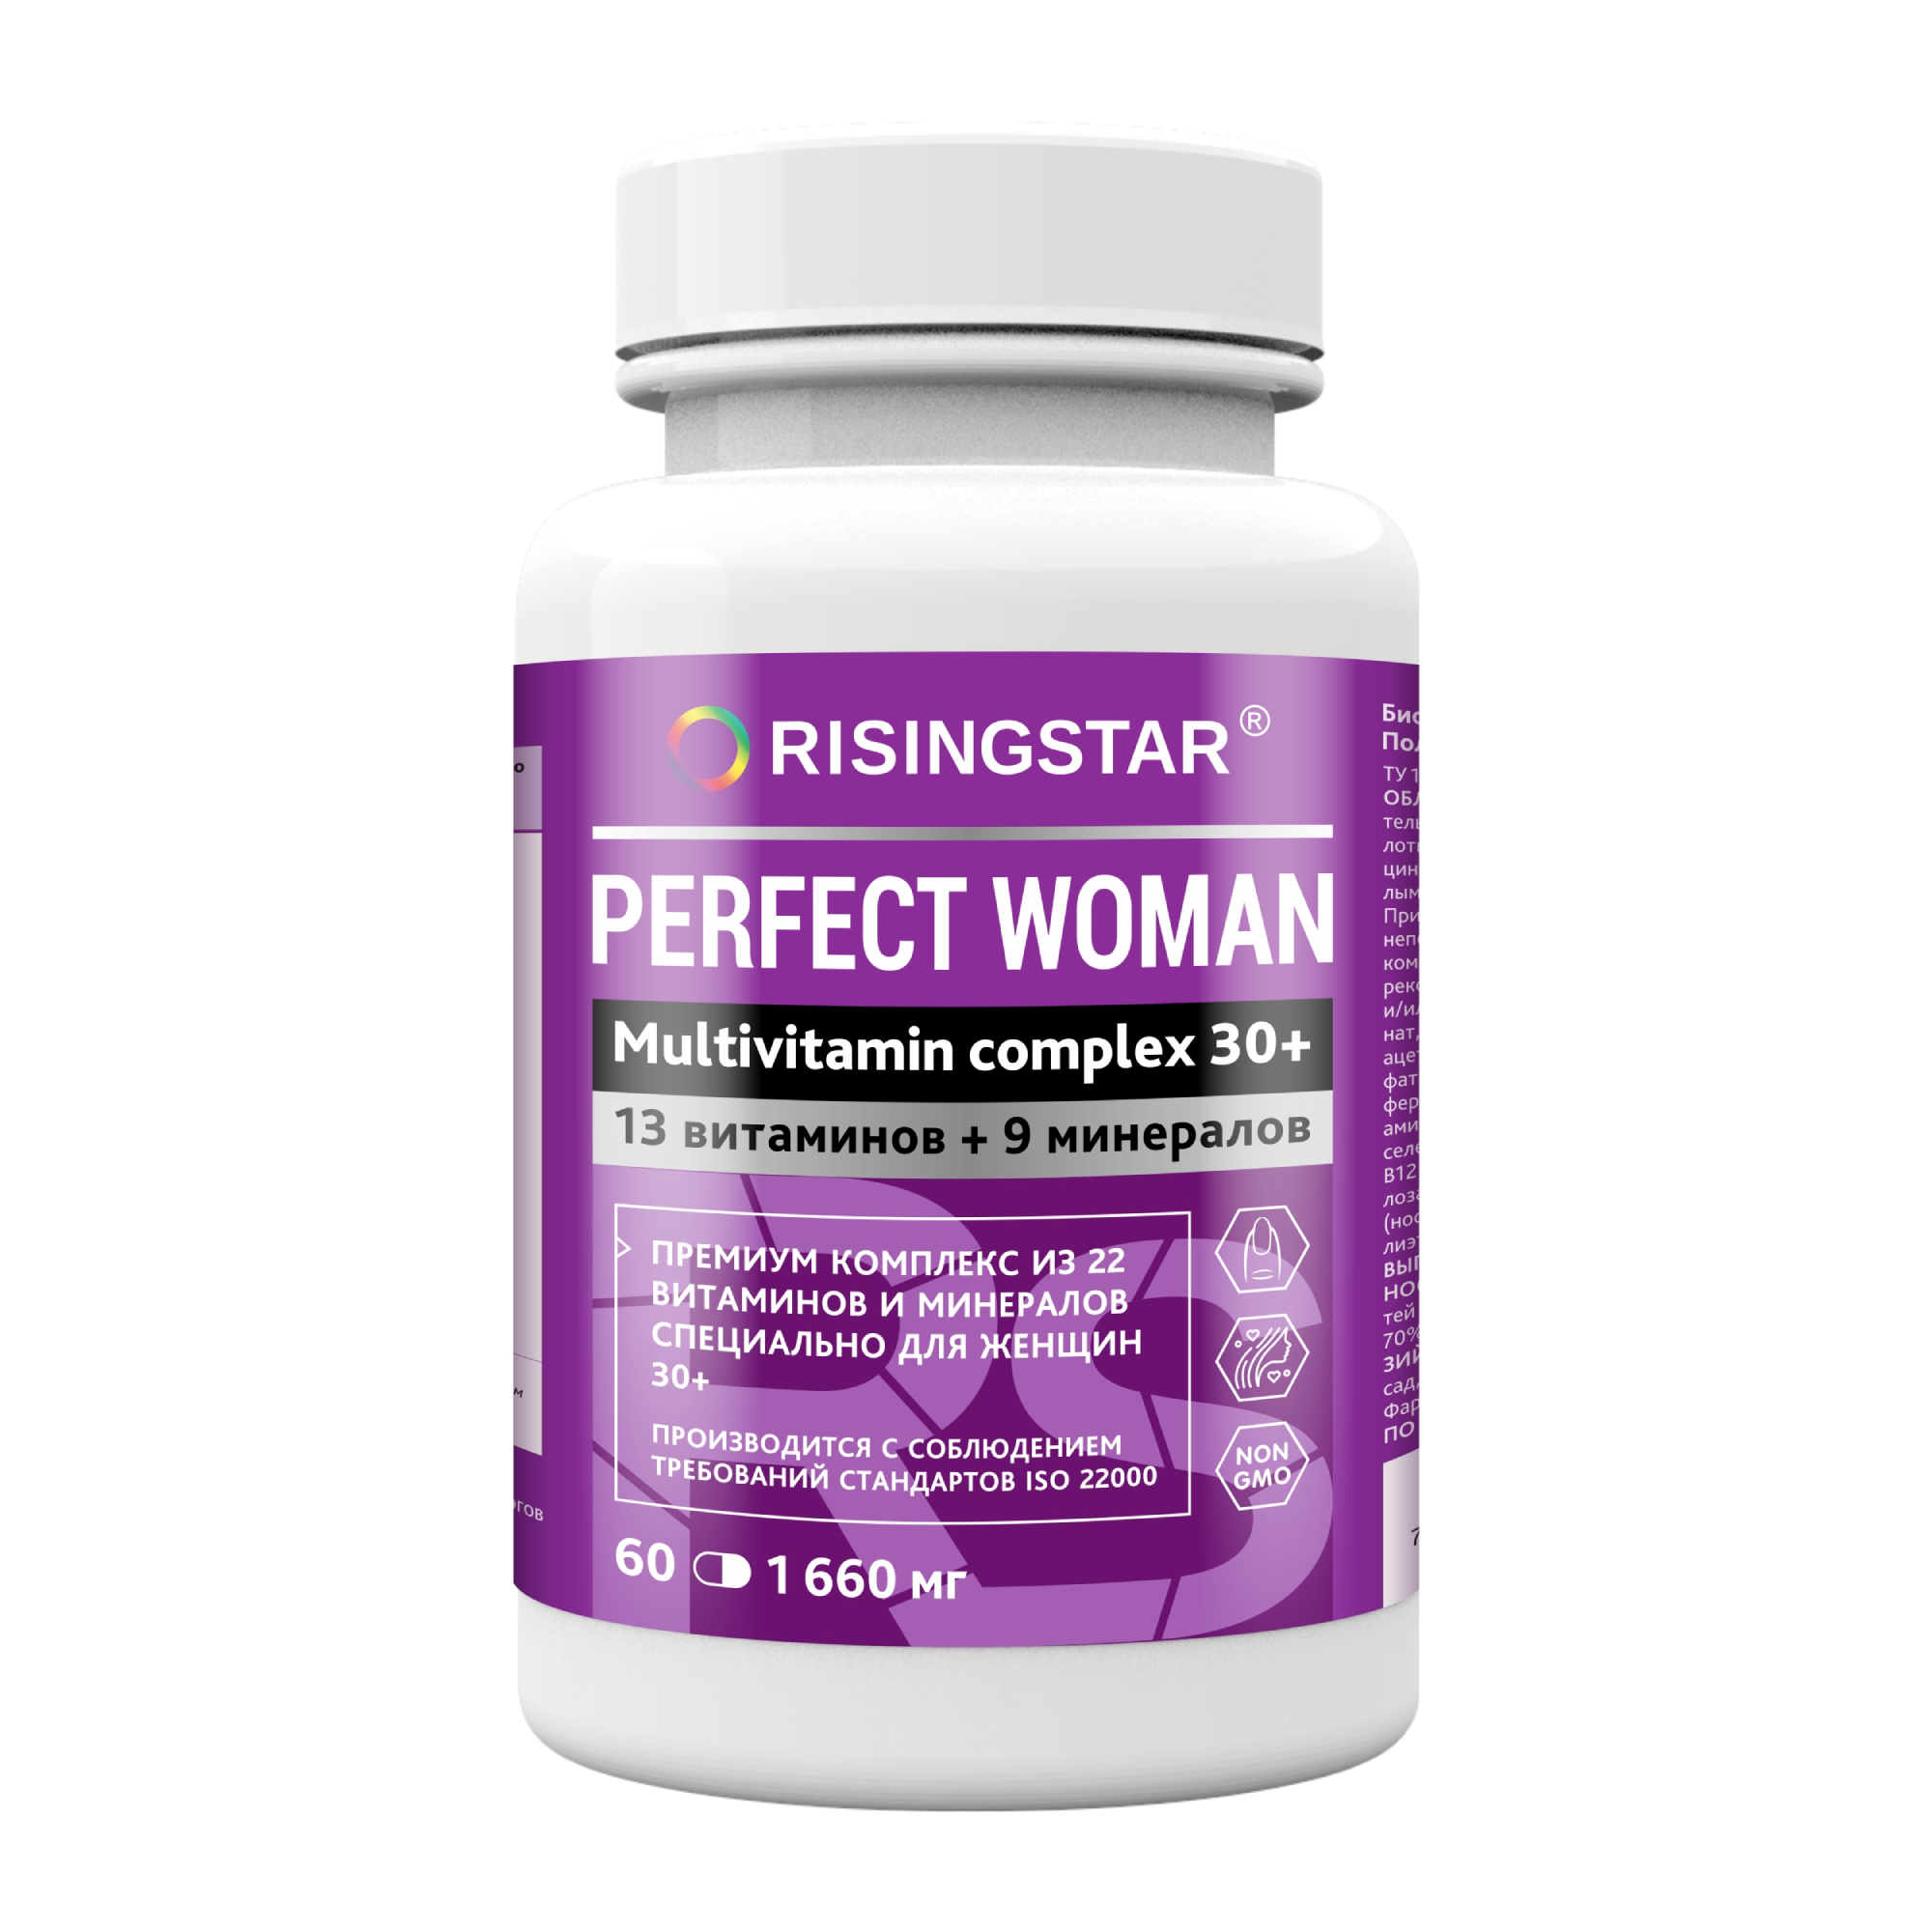 БАД Risingstar поливитаминный комплекс форте для женщин 60 таблеток, 60 г бад risingstar комплекс витаминов адаптогены с омега 3 60 таблеток 100 г